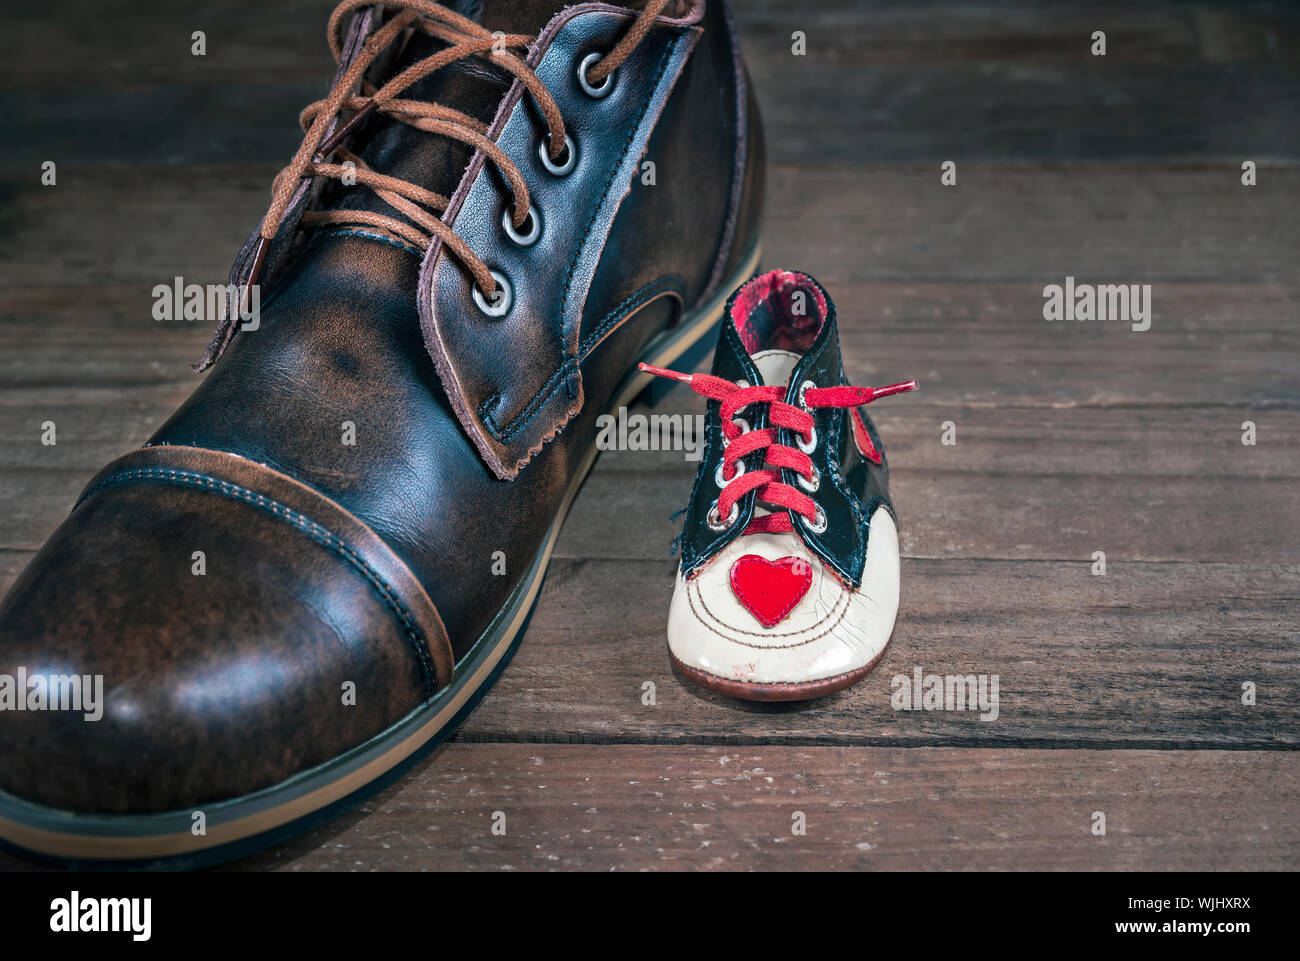 Zapata del recién nacido junto a la misma persona adulta del zapato. Concepto de imagen el crecimiento, el envejecimiento y la evolución de la moda y el diseño. Foto de stock